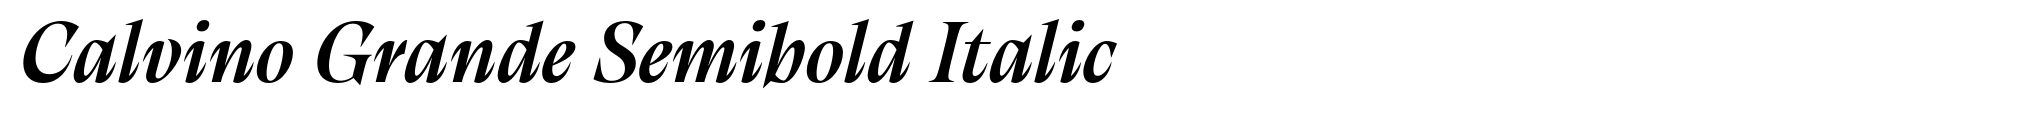 Calvino Grande Semibold Italic image